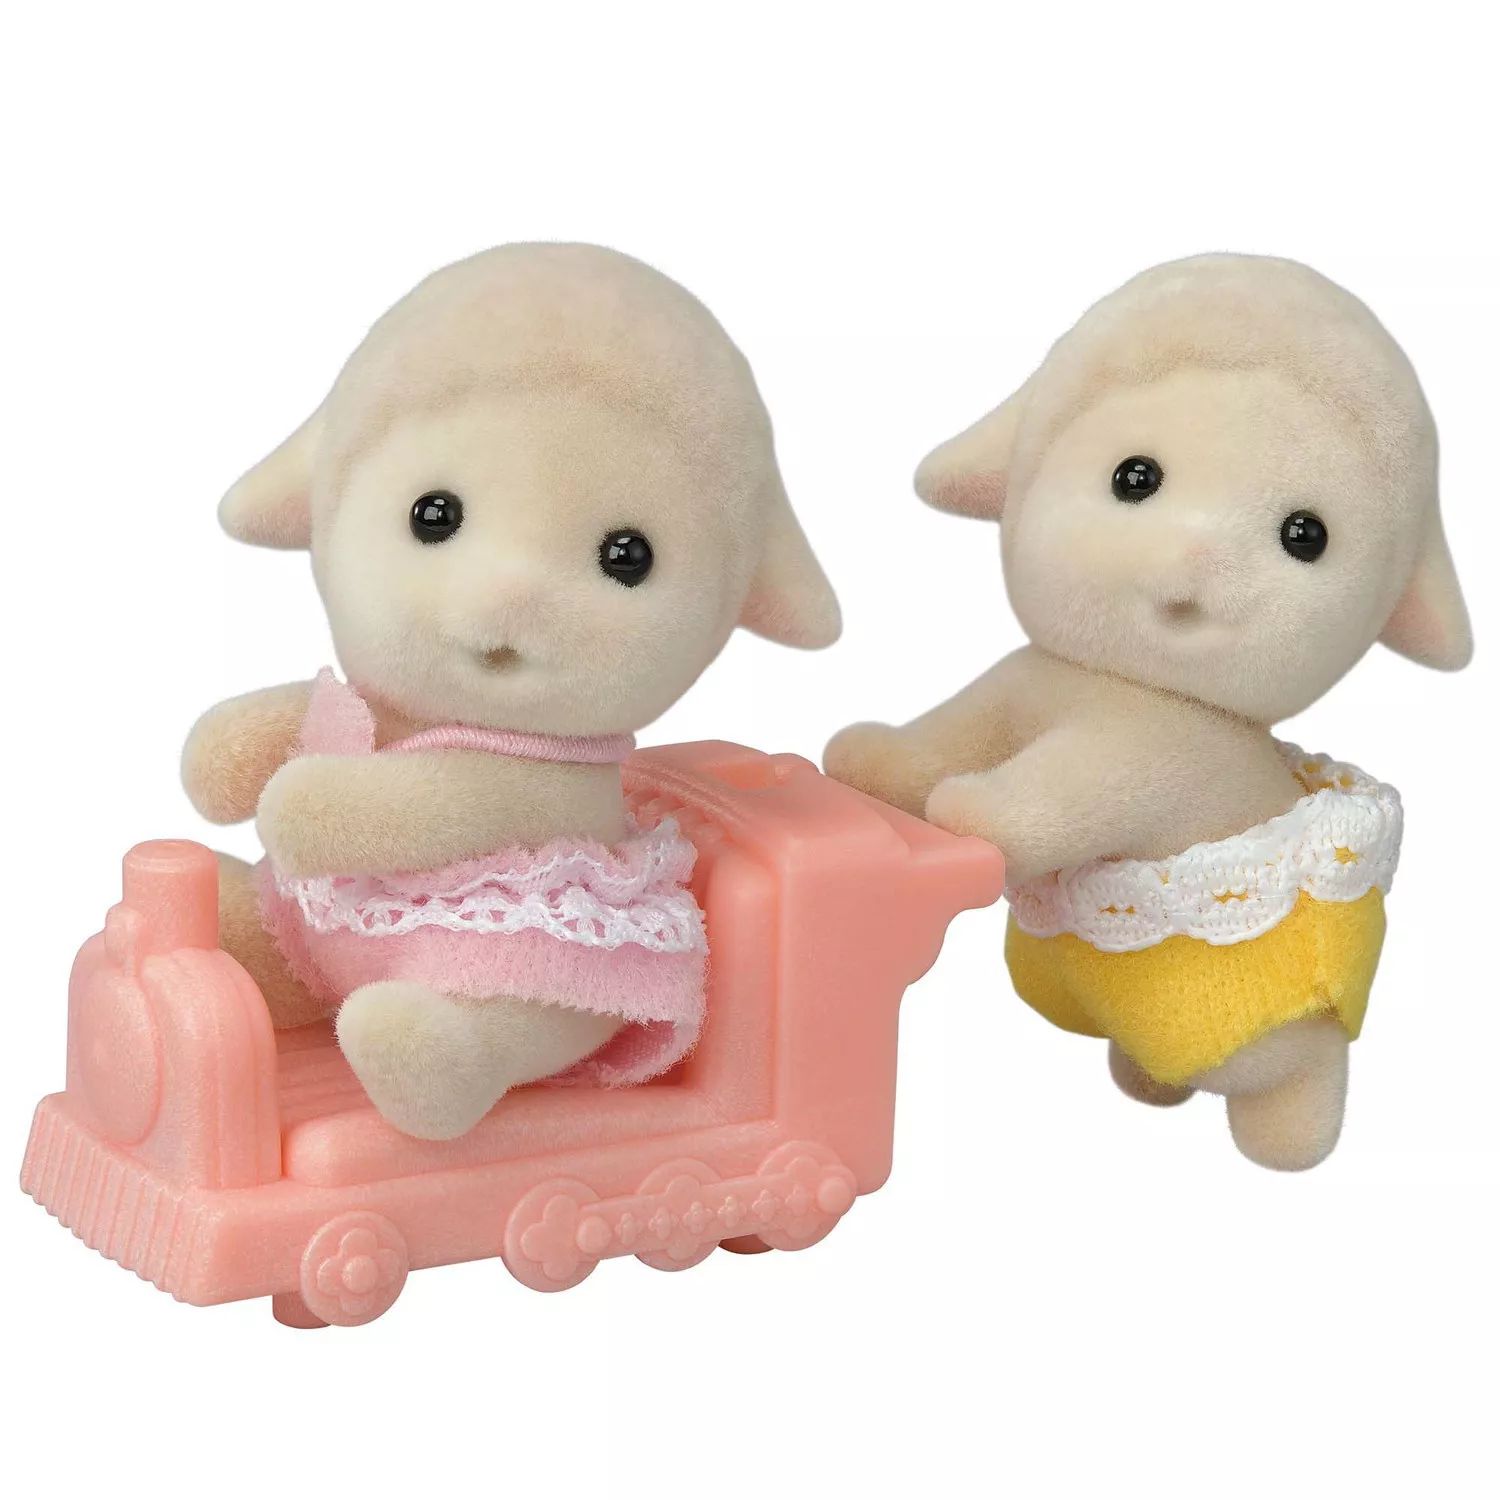 Набор из 2 коллекционных кукольных фигурок Calico Critters Sheep Twins с аксессуарами для автомобилей Calico Critters